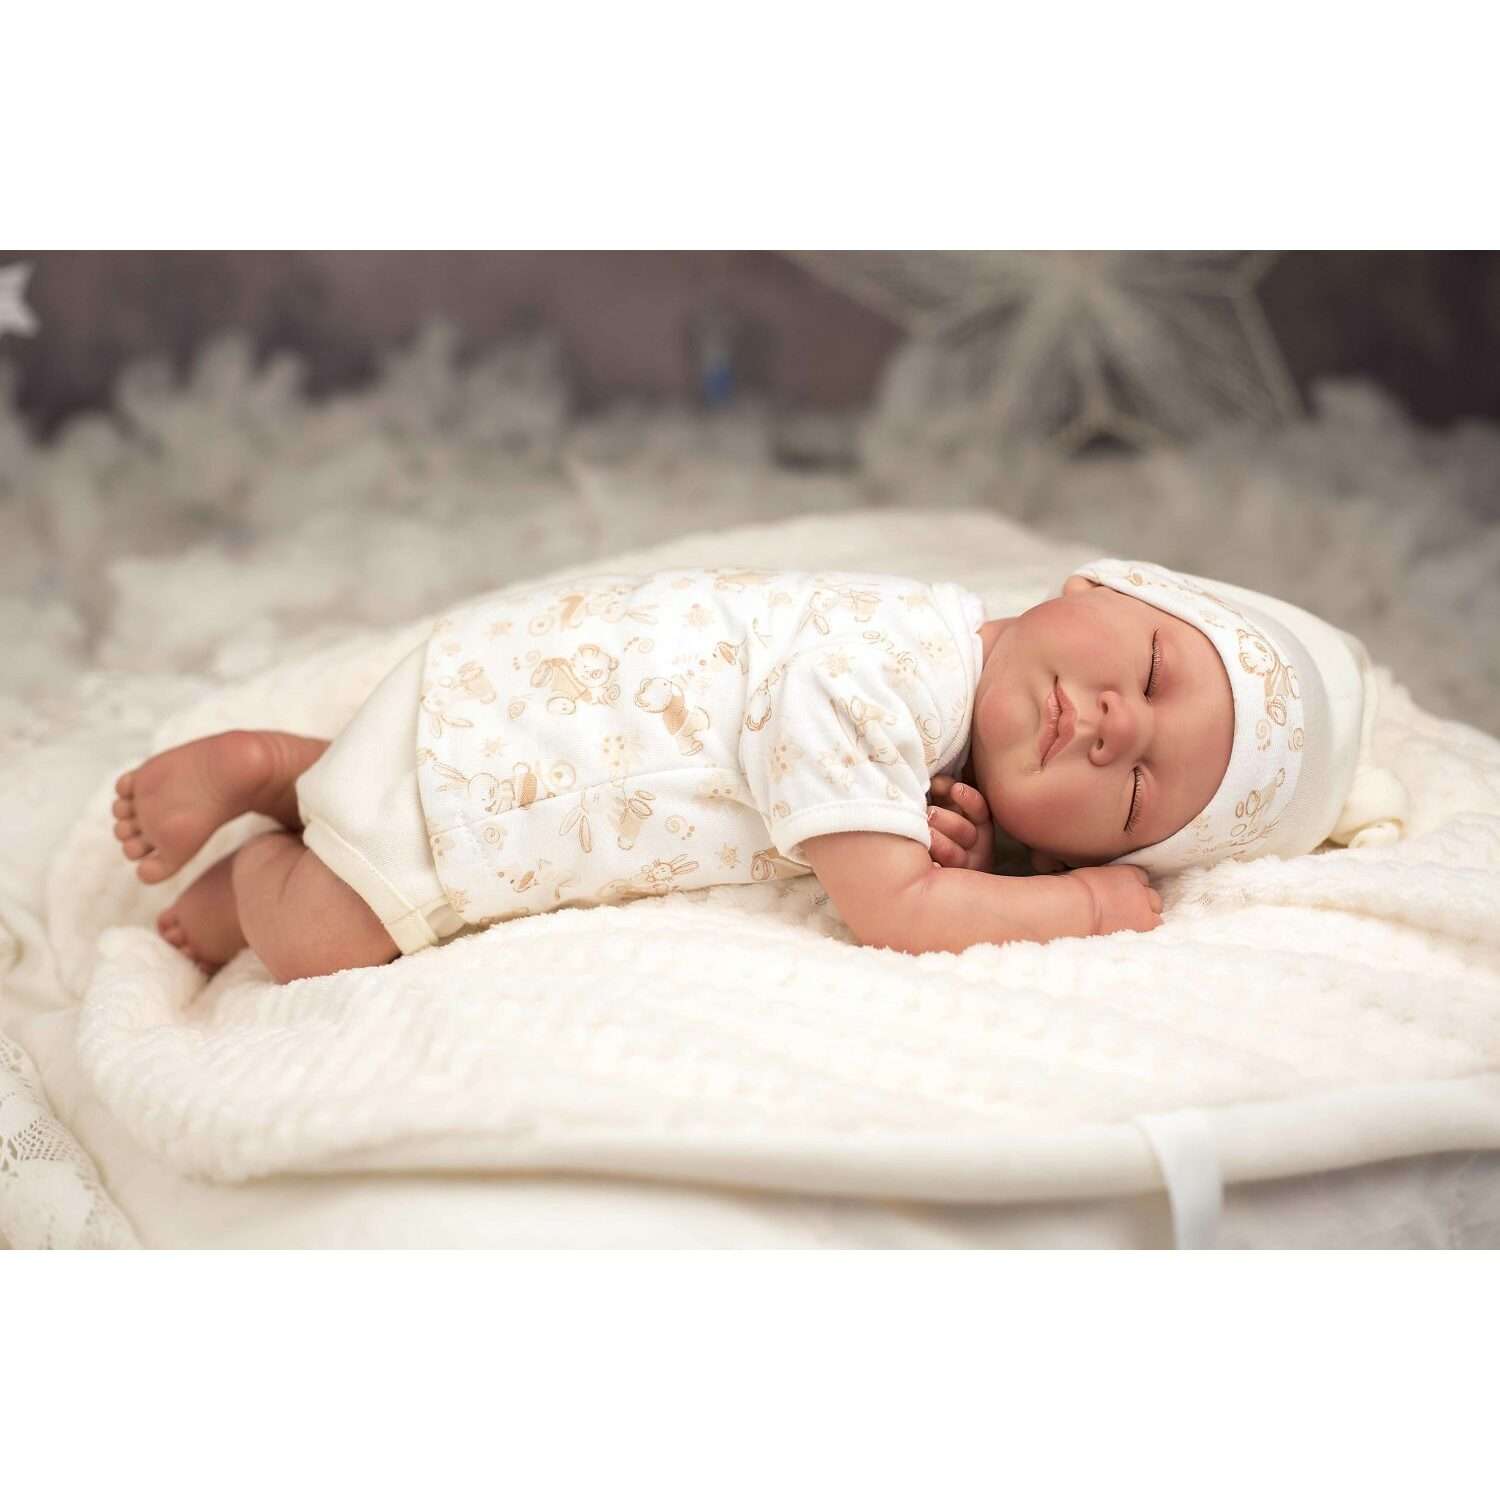 Кукла Arias ReBorns Pablo новорождённый пупс 45 см в одежде с соской одеялом подгузниками Т22108 - фото 14